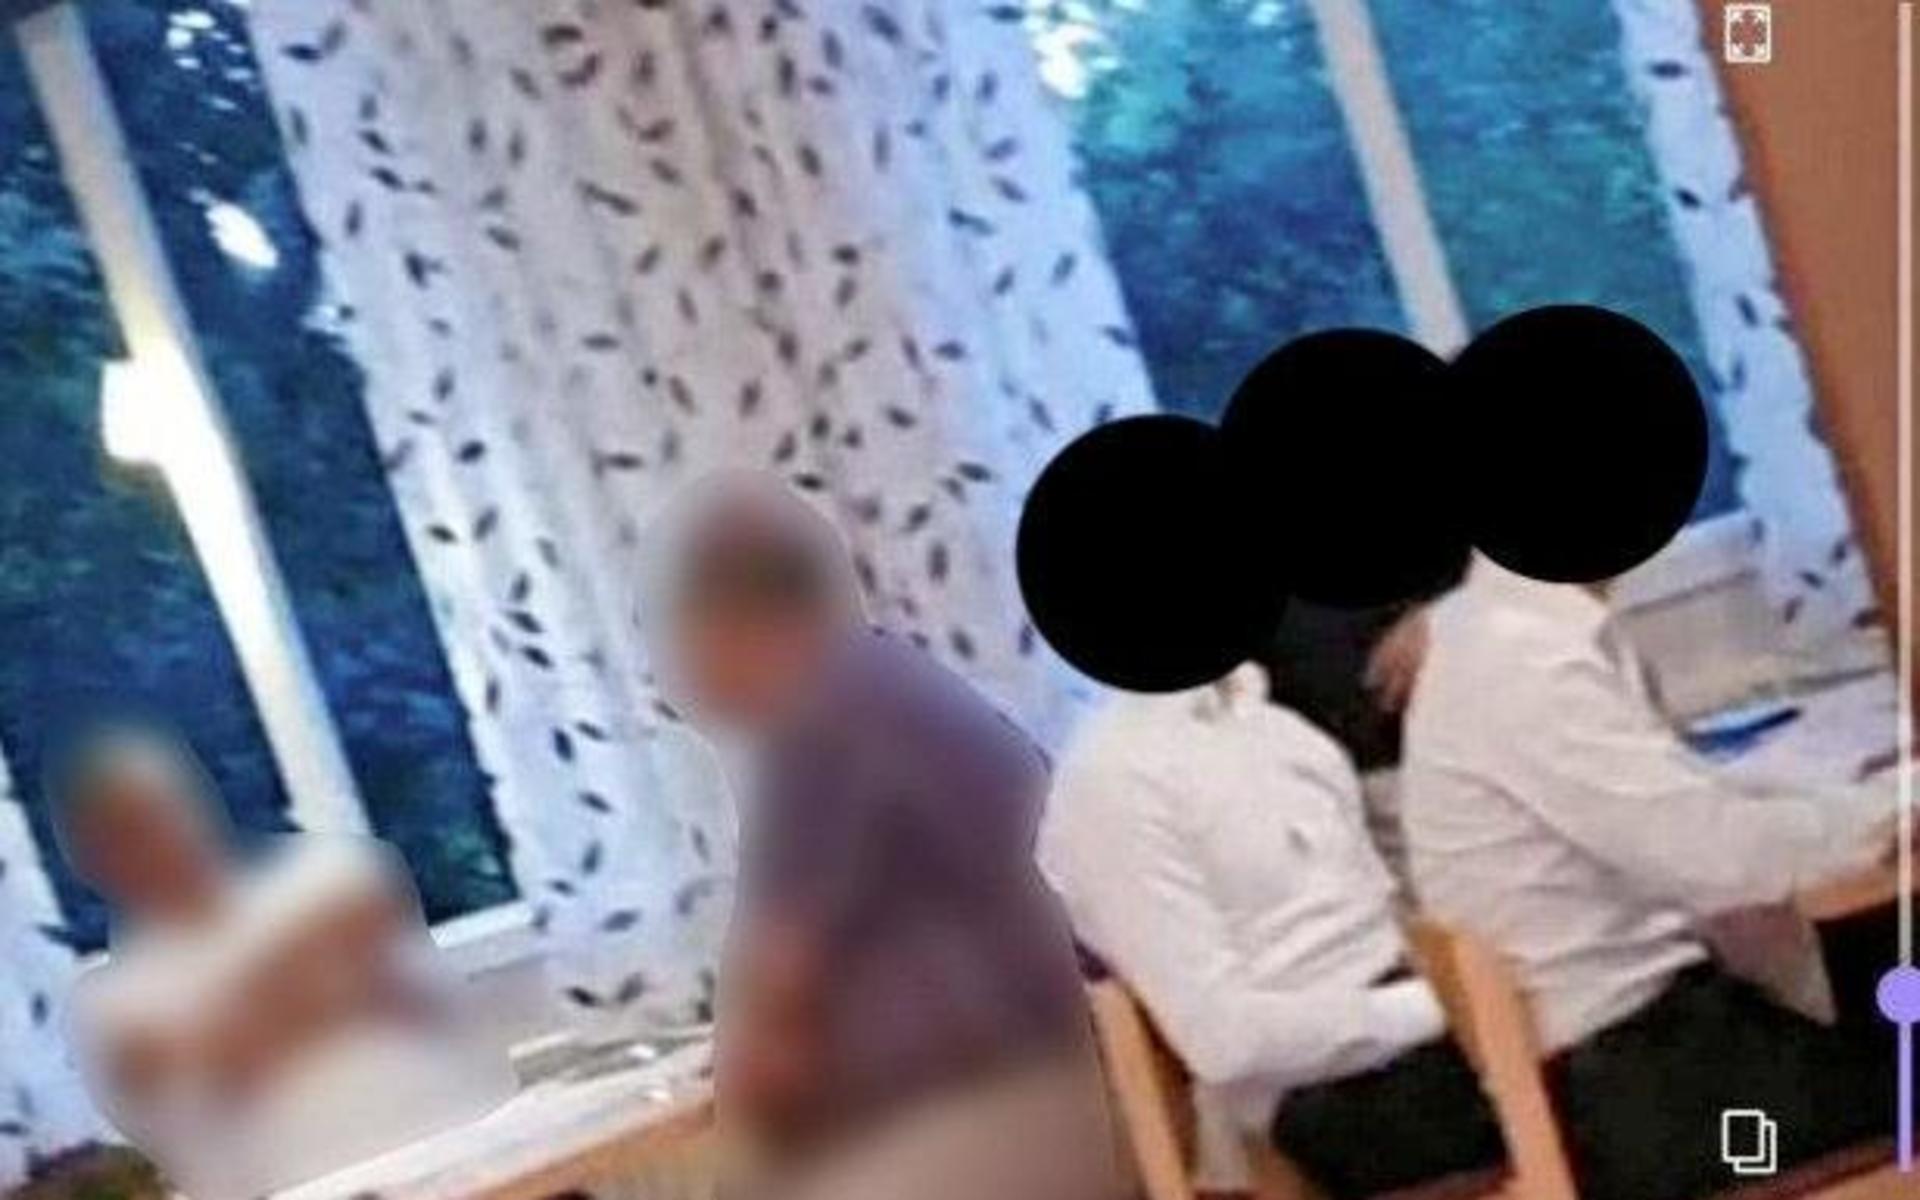 De misstänkta männen filmades under bröllopsfesten i Knäreds bygdegård på fredagen. Knivöverfallet mot en annan av bröllopsgästerna ägde rum före bröllopsceremonin som skulle hållas dagen efter. 